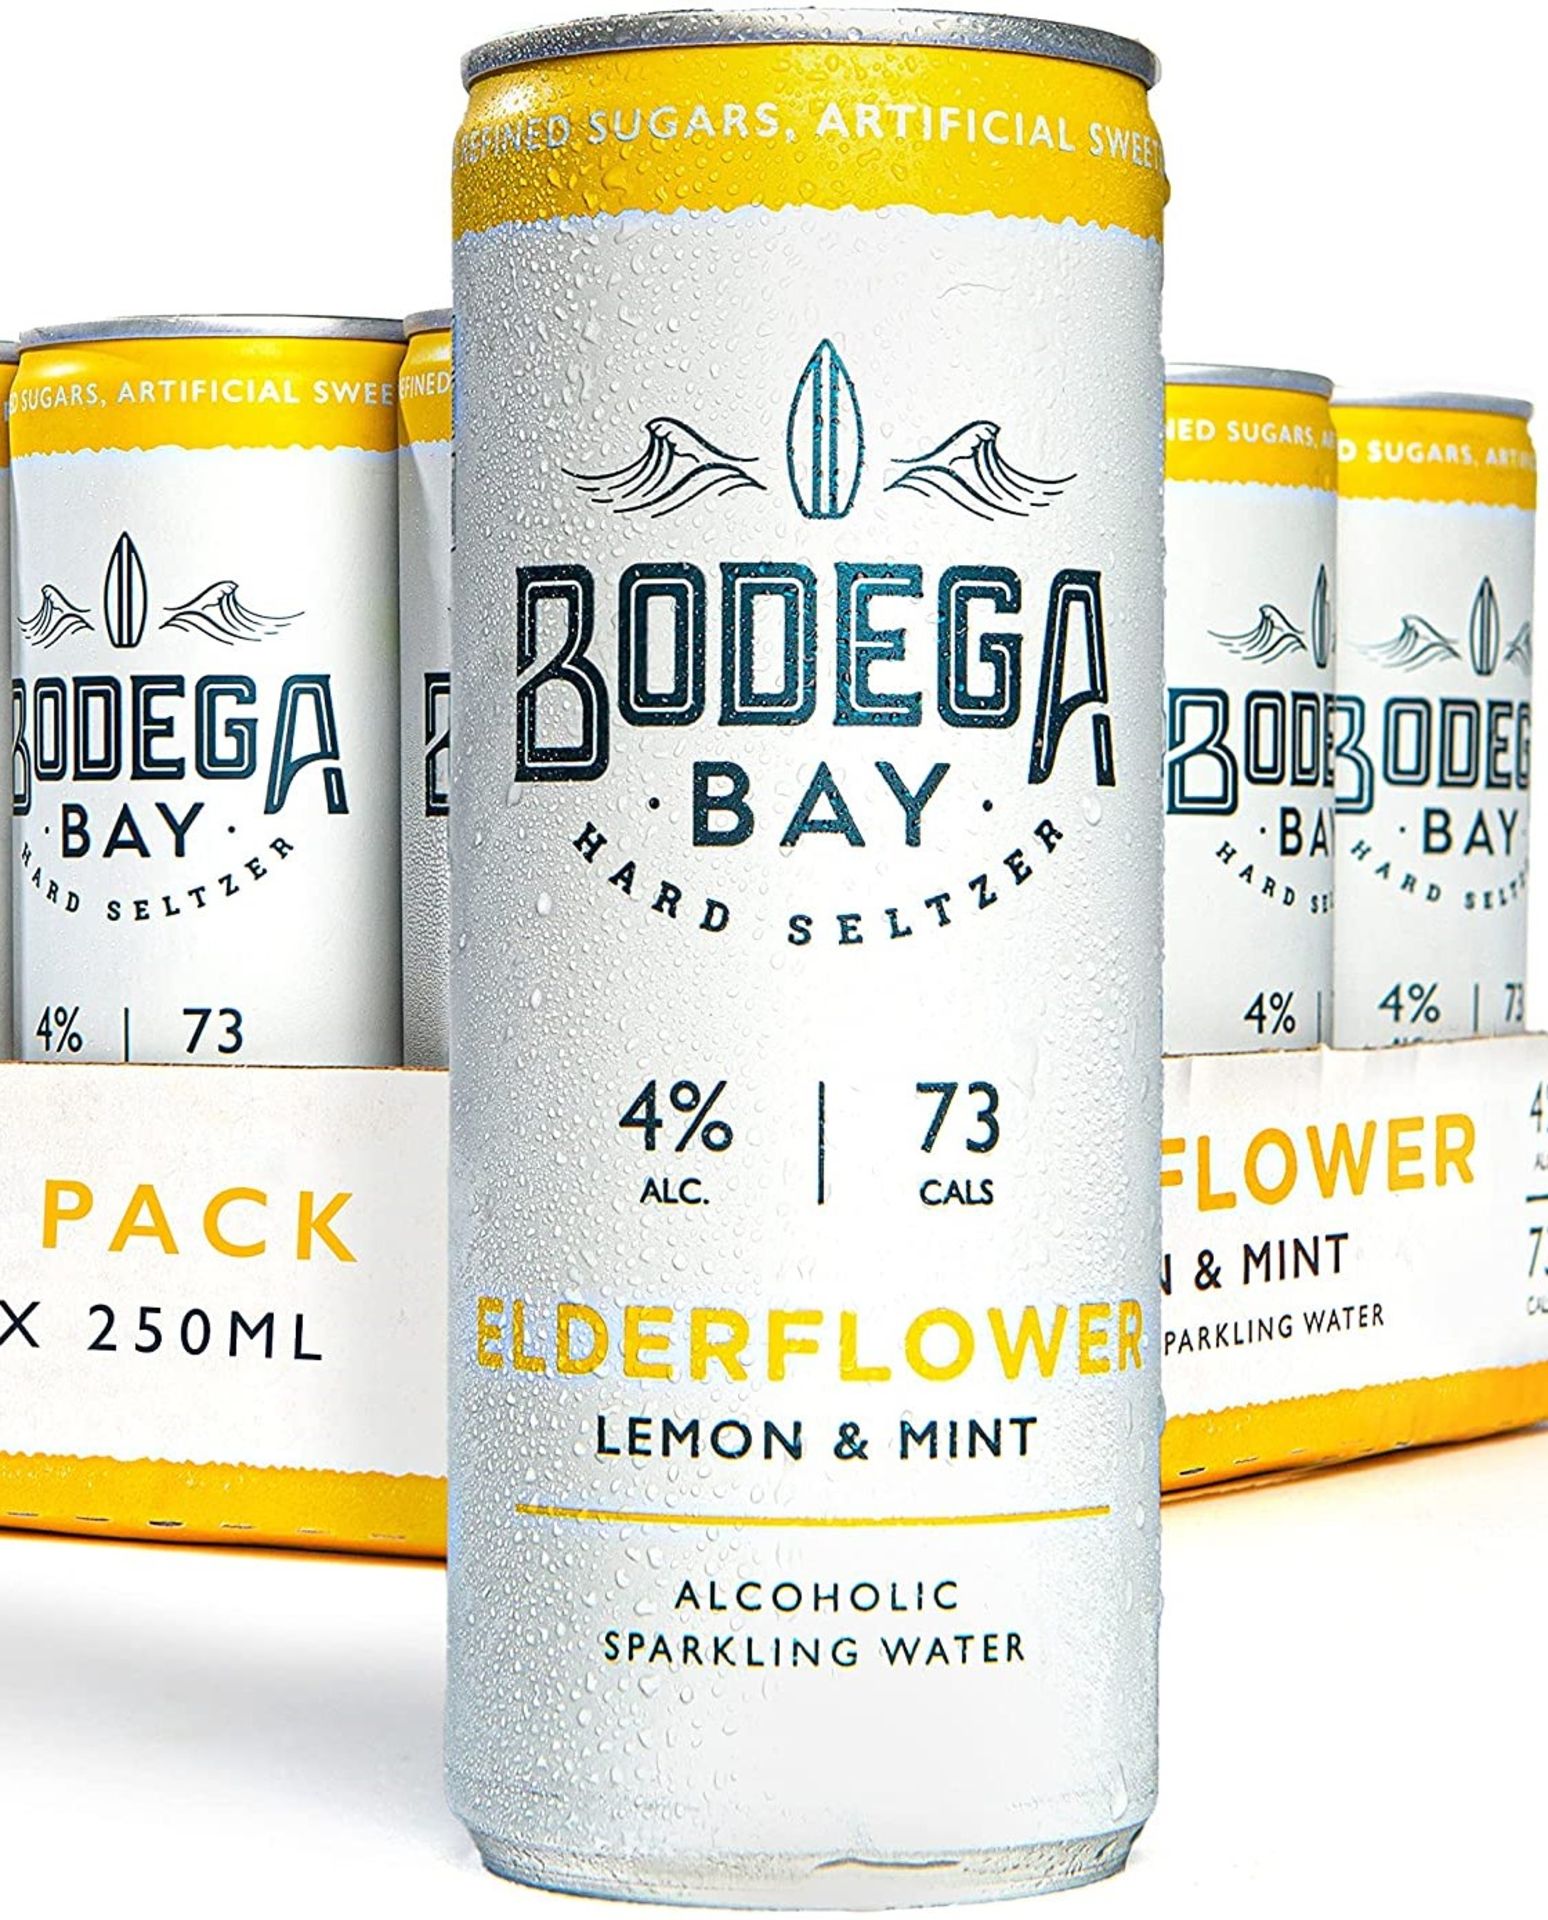 24 x Bodega Bay Hard Seltzer 250ml Alcoholic Sparkling Water Drinks - Elderflower Lemon & Mint - - Image 2 of 7